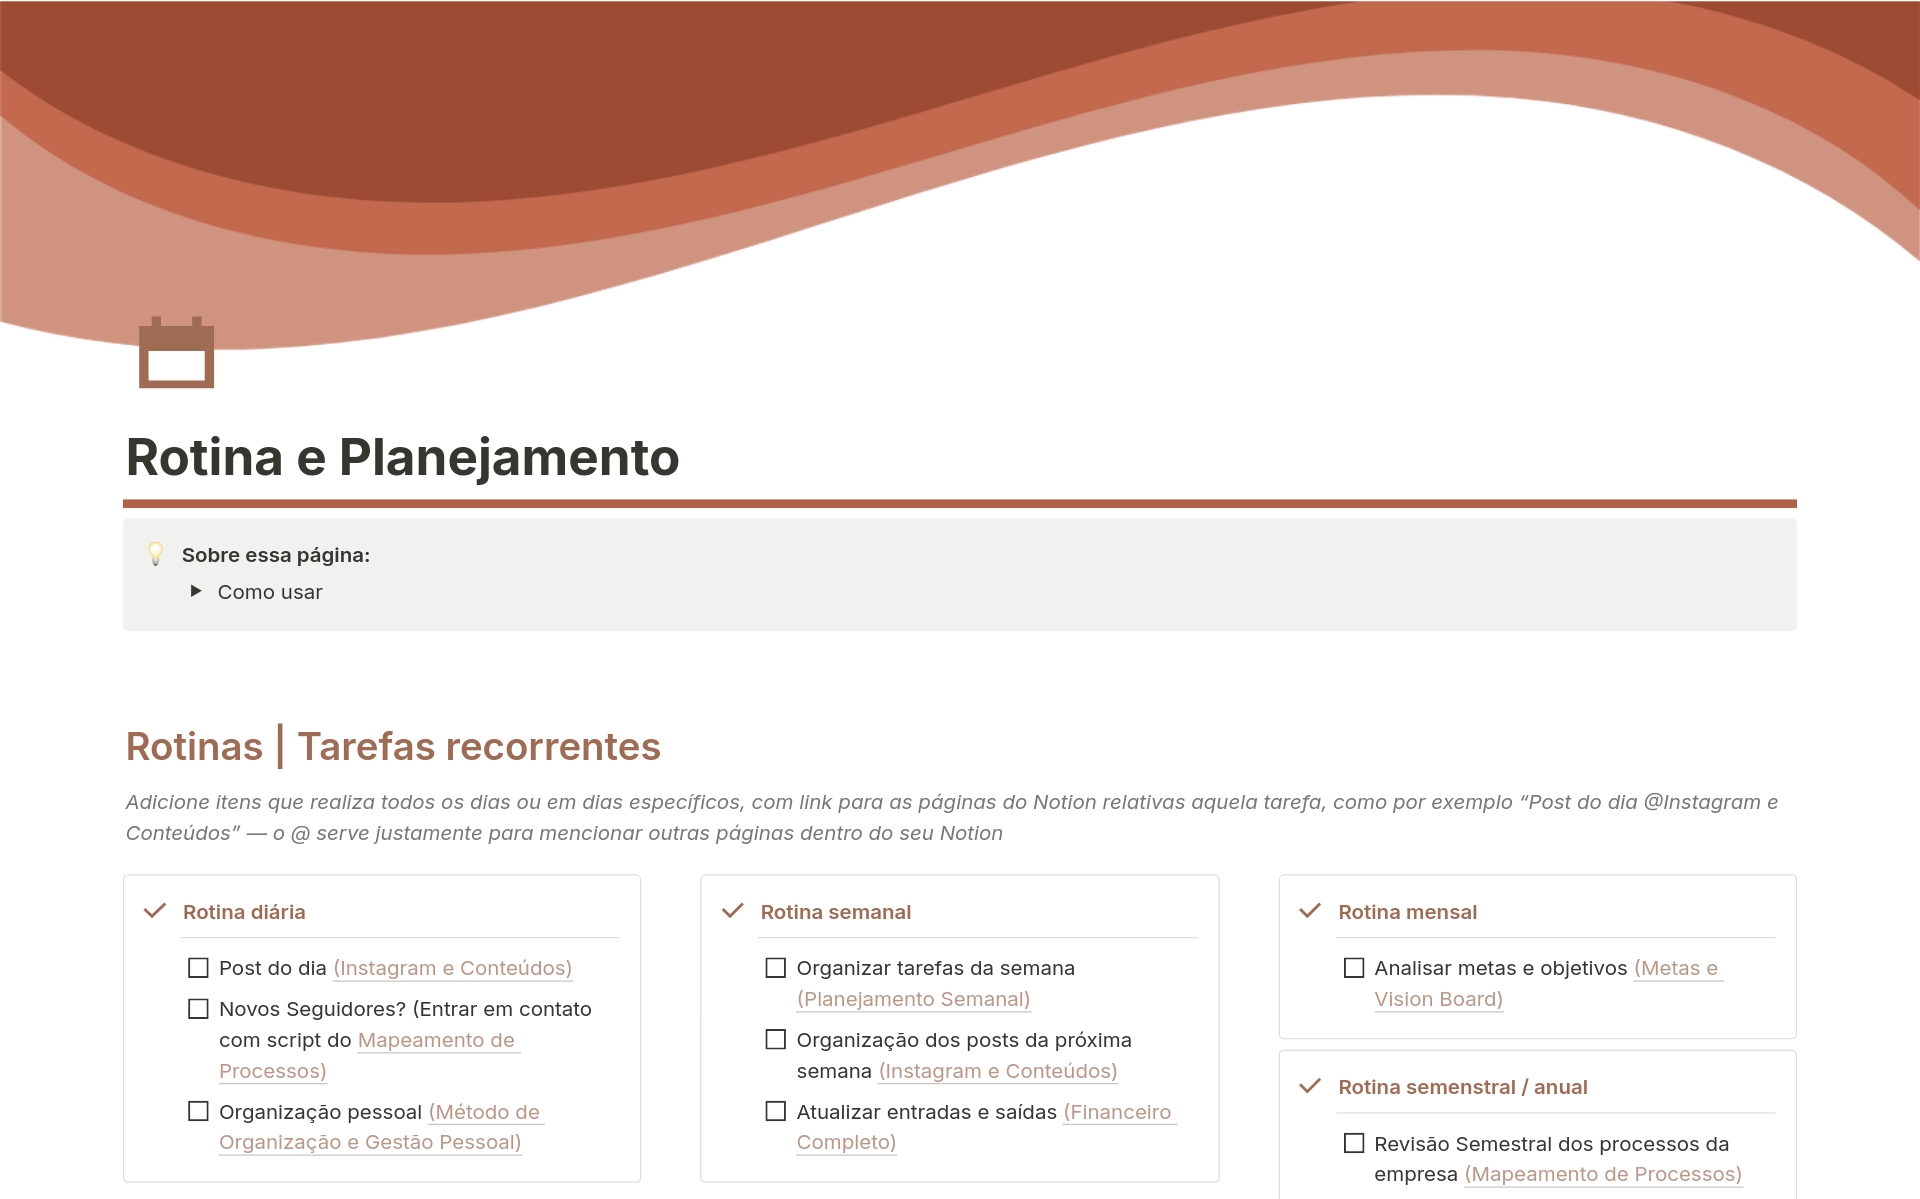 En förhandsgranskning av mallen för Rotina e Planejamento